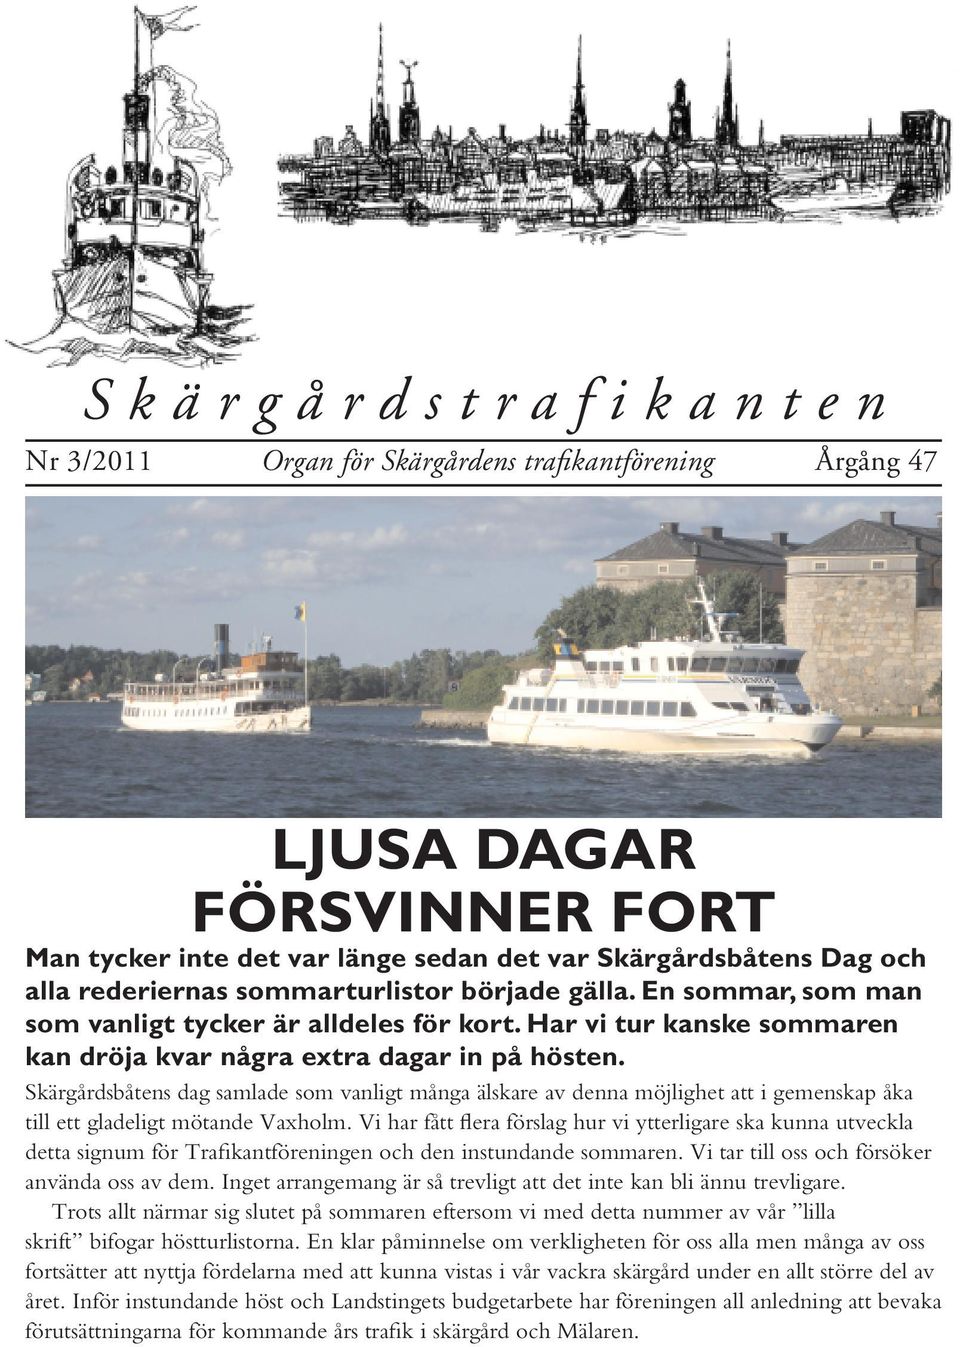 Skärgårdsbåtens dag samlade som vanligt många älskare av denna möjlighet att i gemenskap åka till ett gladeligt mötande Vaxholm.